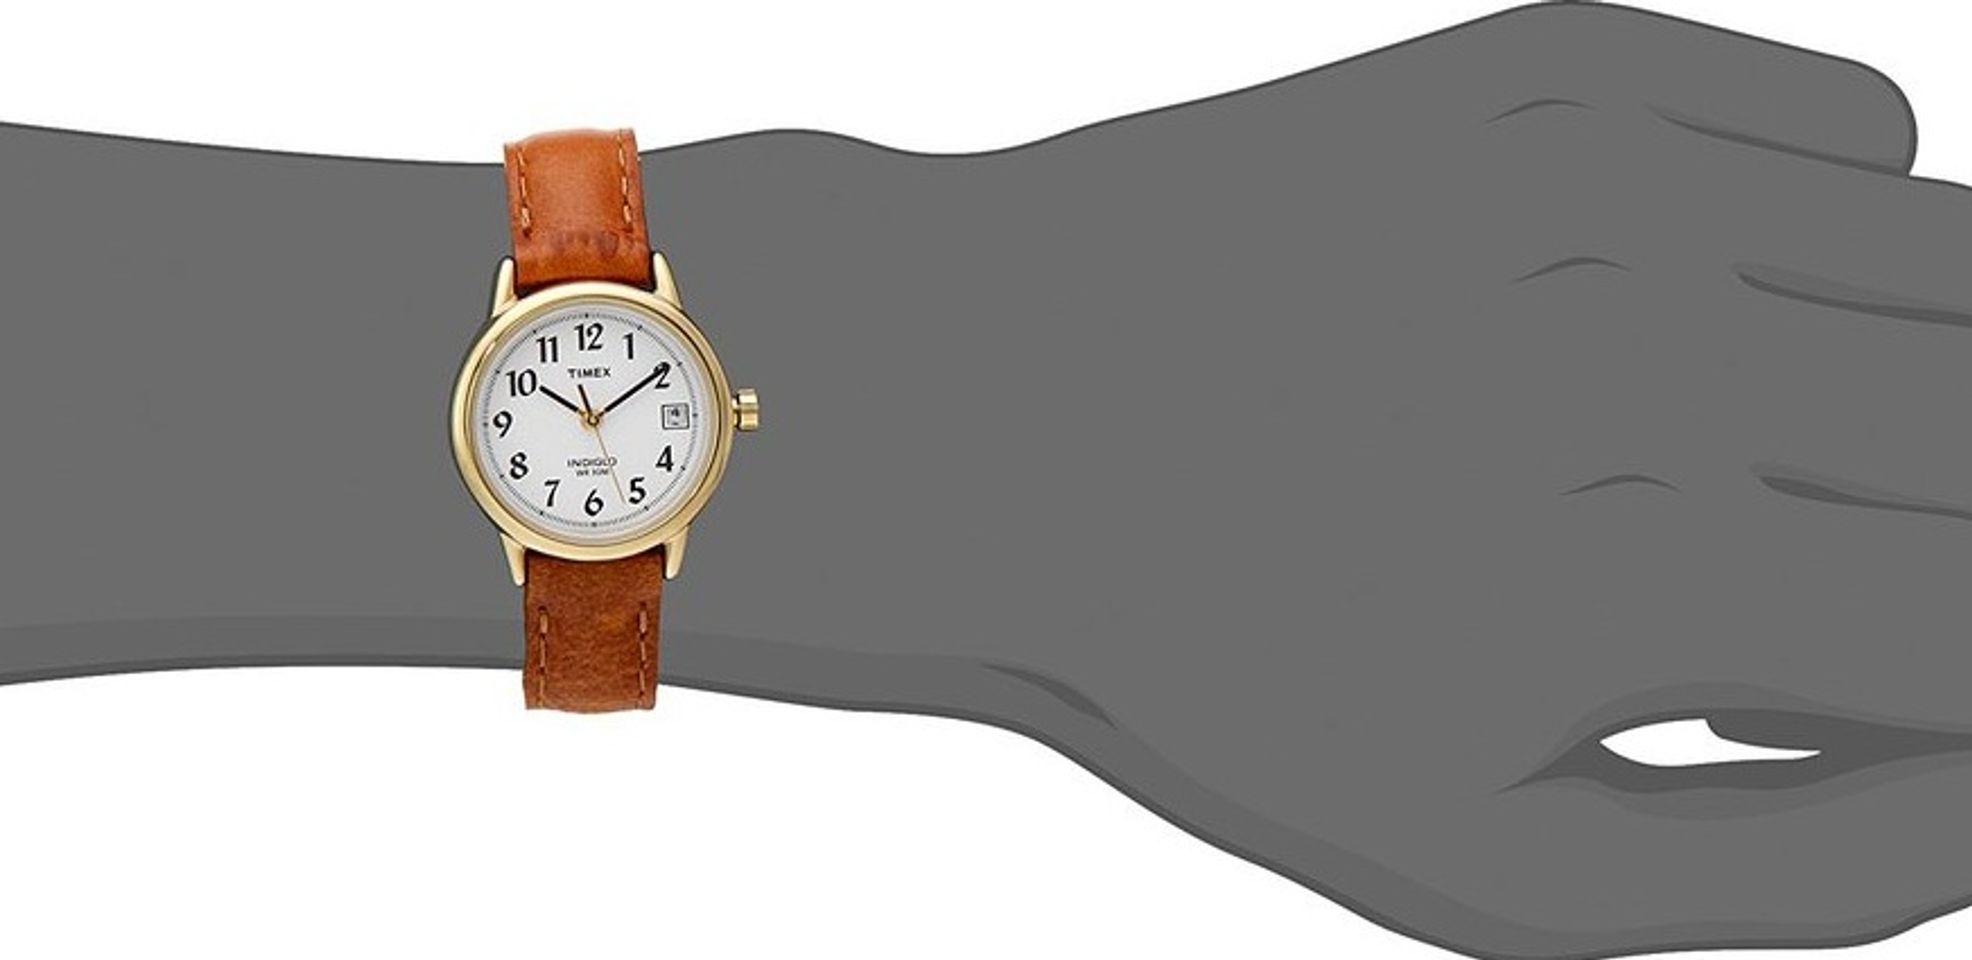 Chiếc đồng hồ Timex nữ này lên tay nhỏ nhắn và tinh tế như chính các cô gái